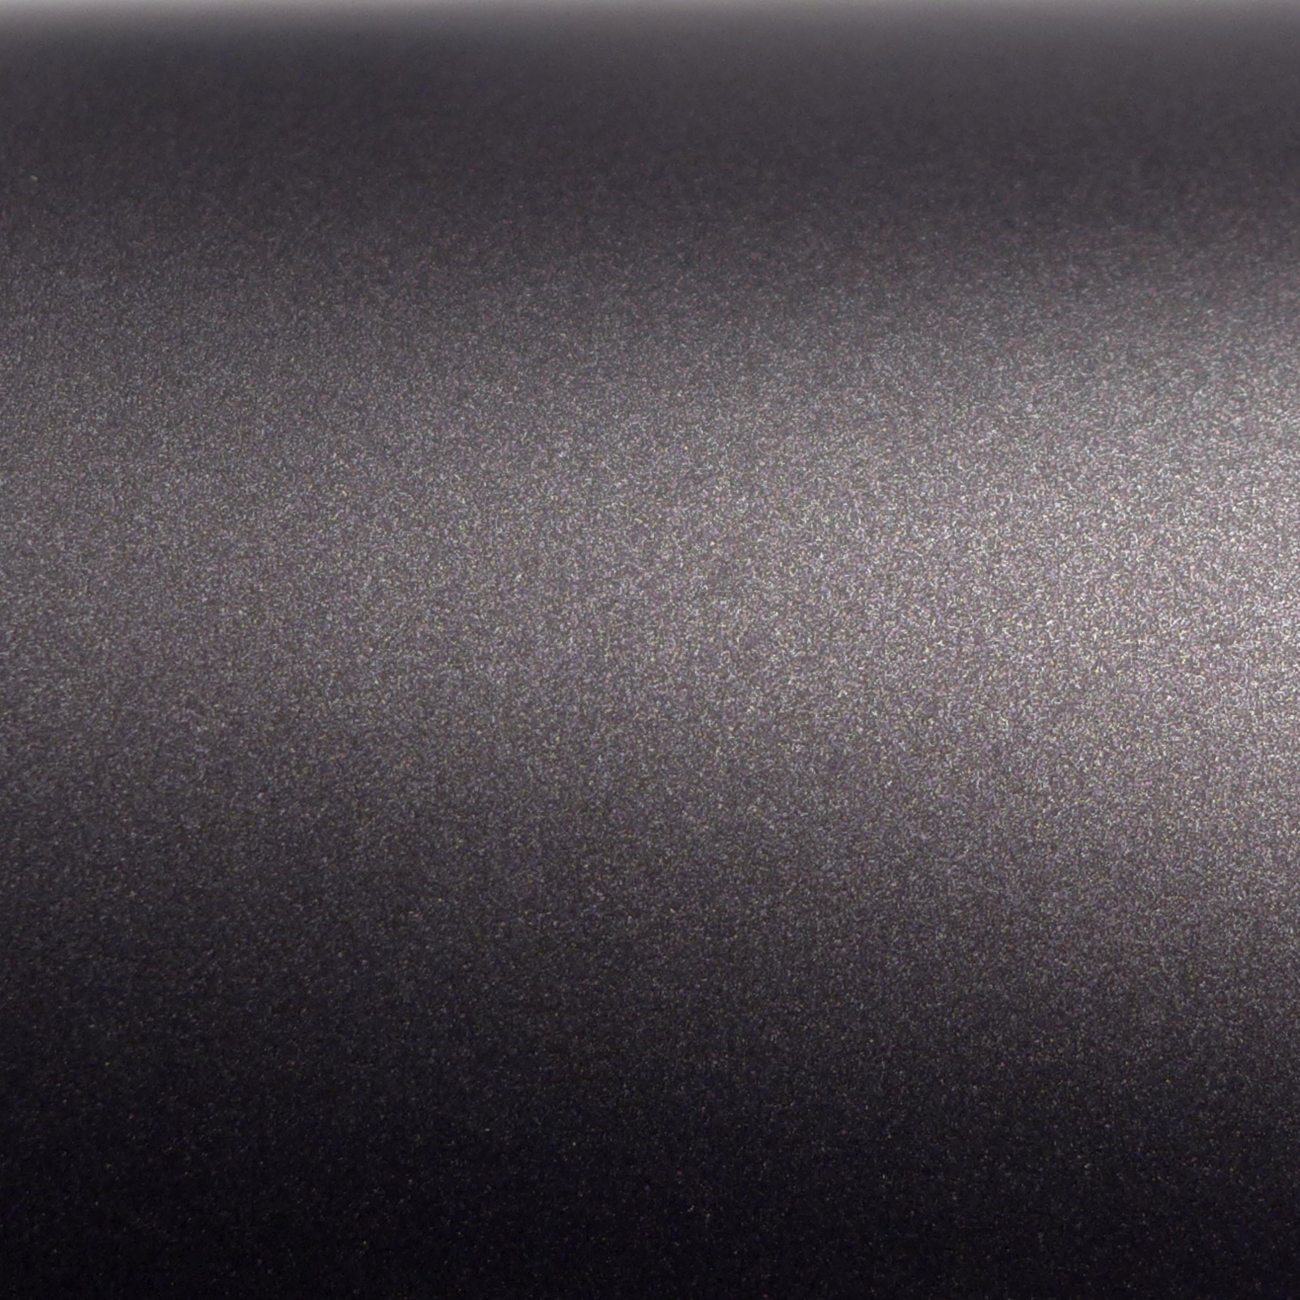 3M Wrap Film 2080-M211, Matte Charcoal Metallic, 1524 mm x 25 m